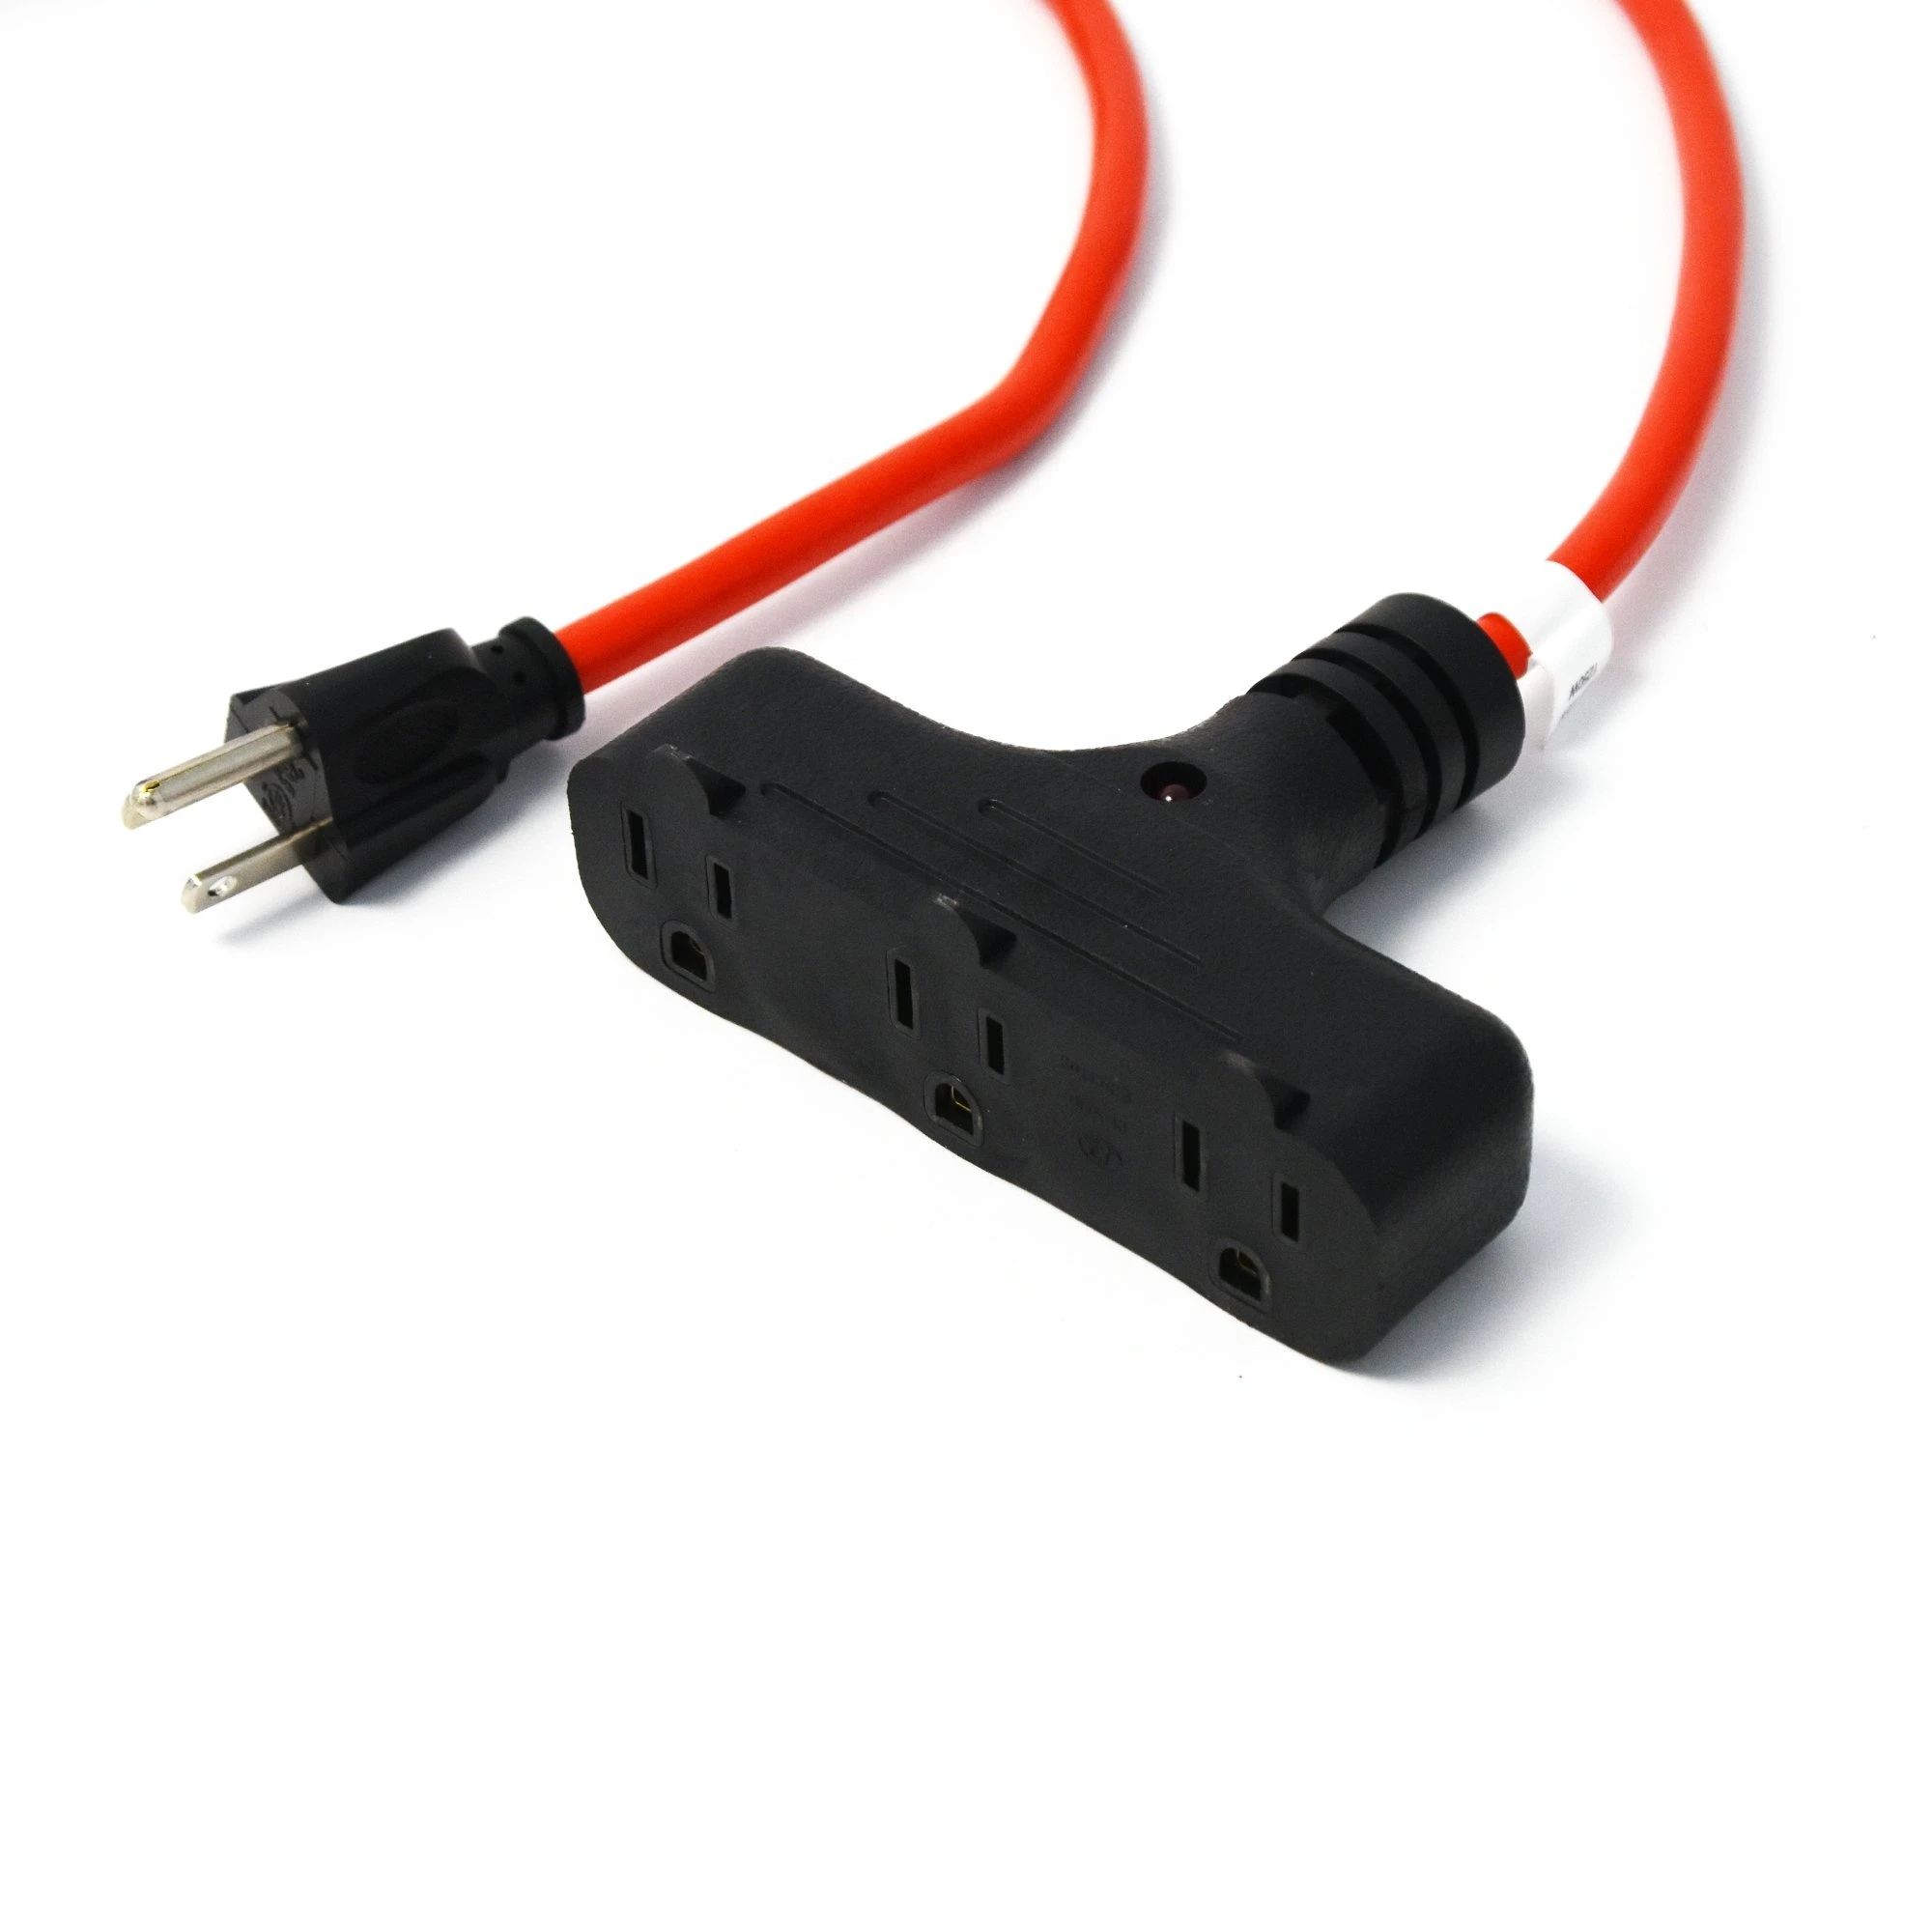 heavy duty cord reel retractable cord reel metal cord reel SJTW 16/3 30FT mounting bracket included